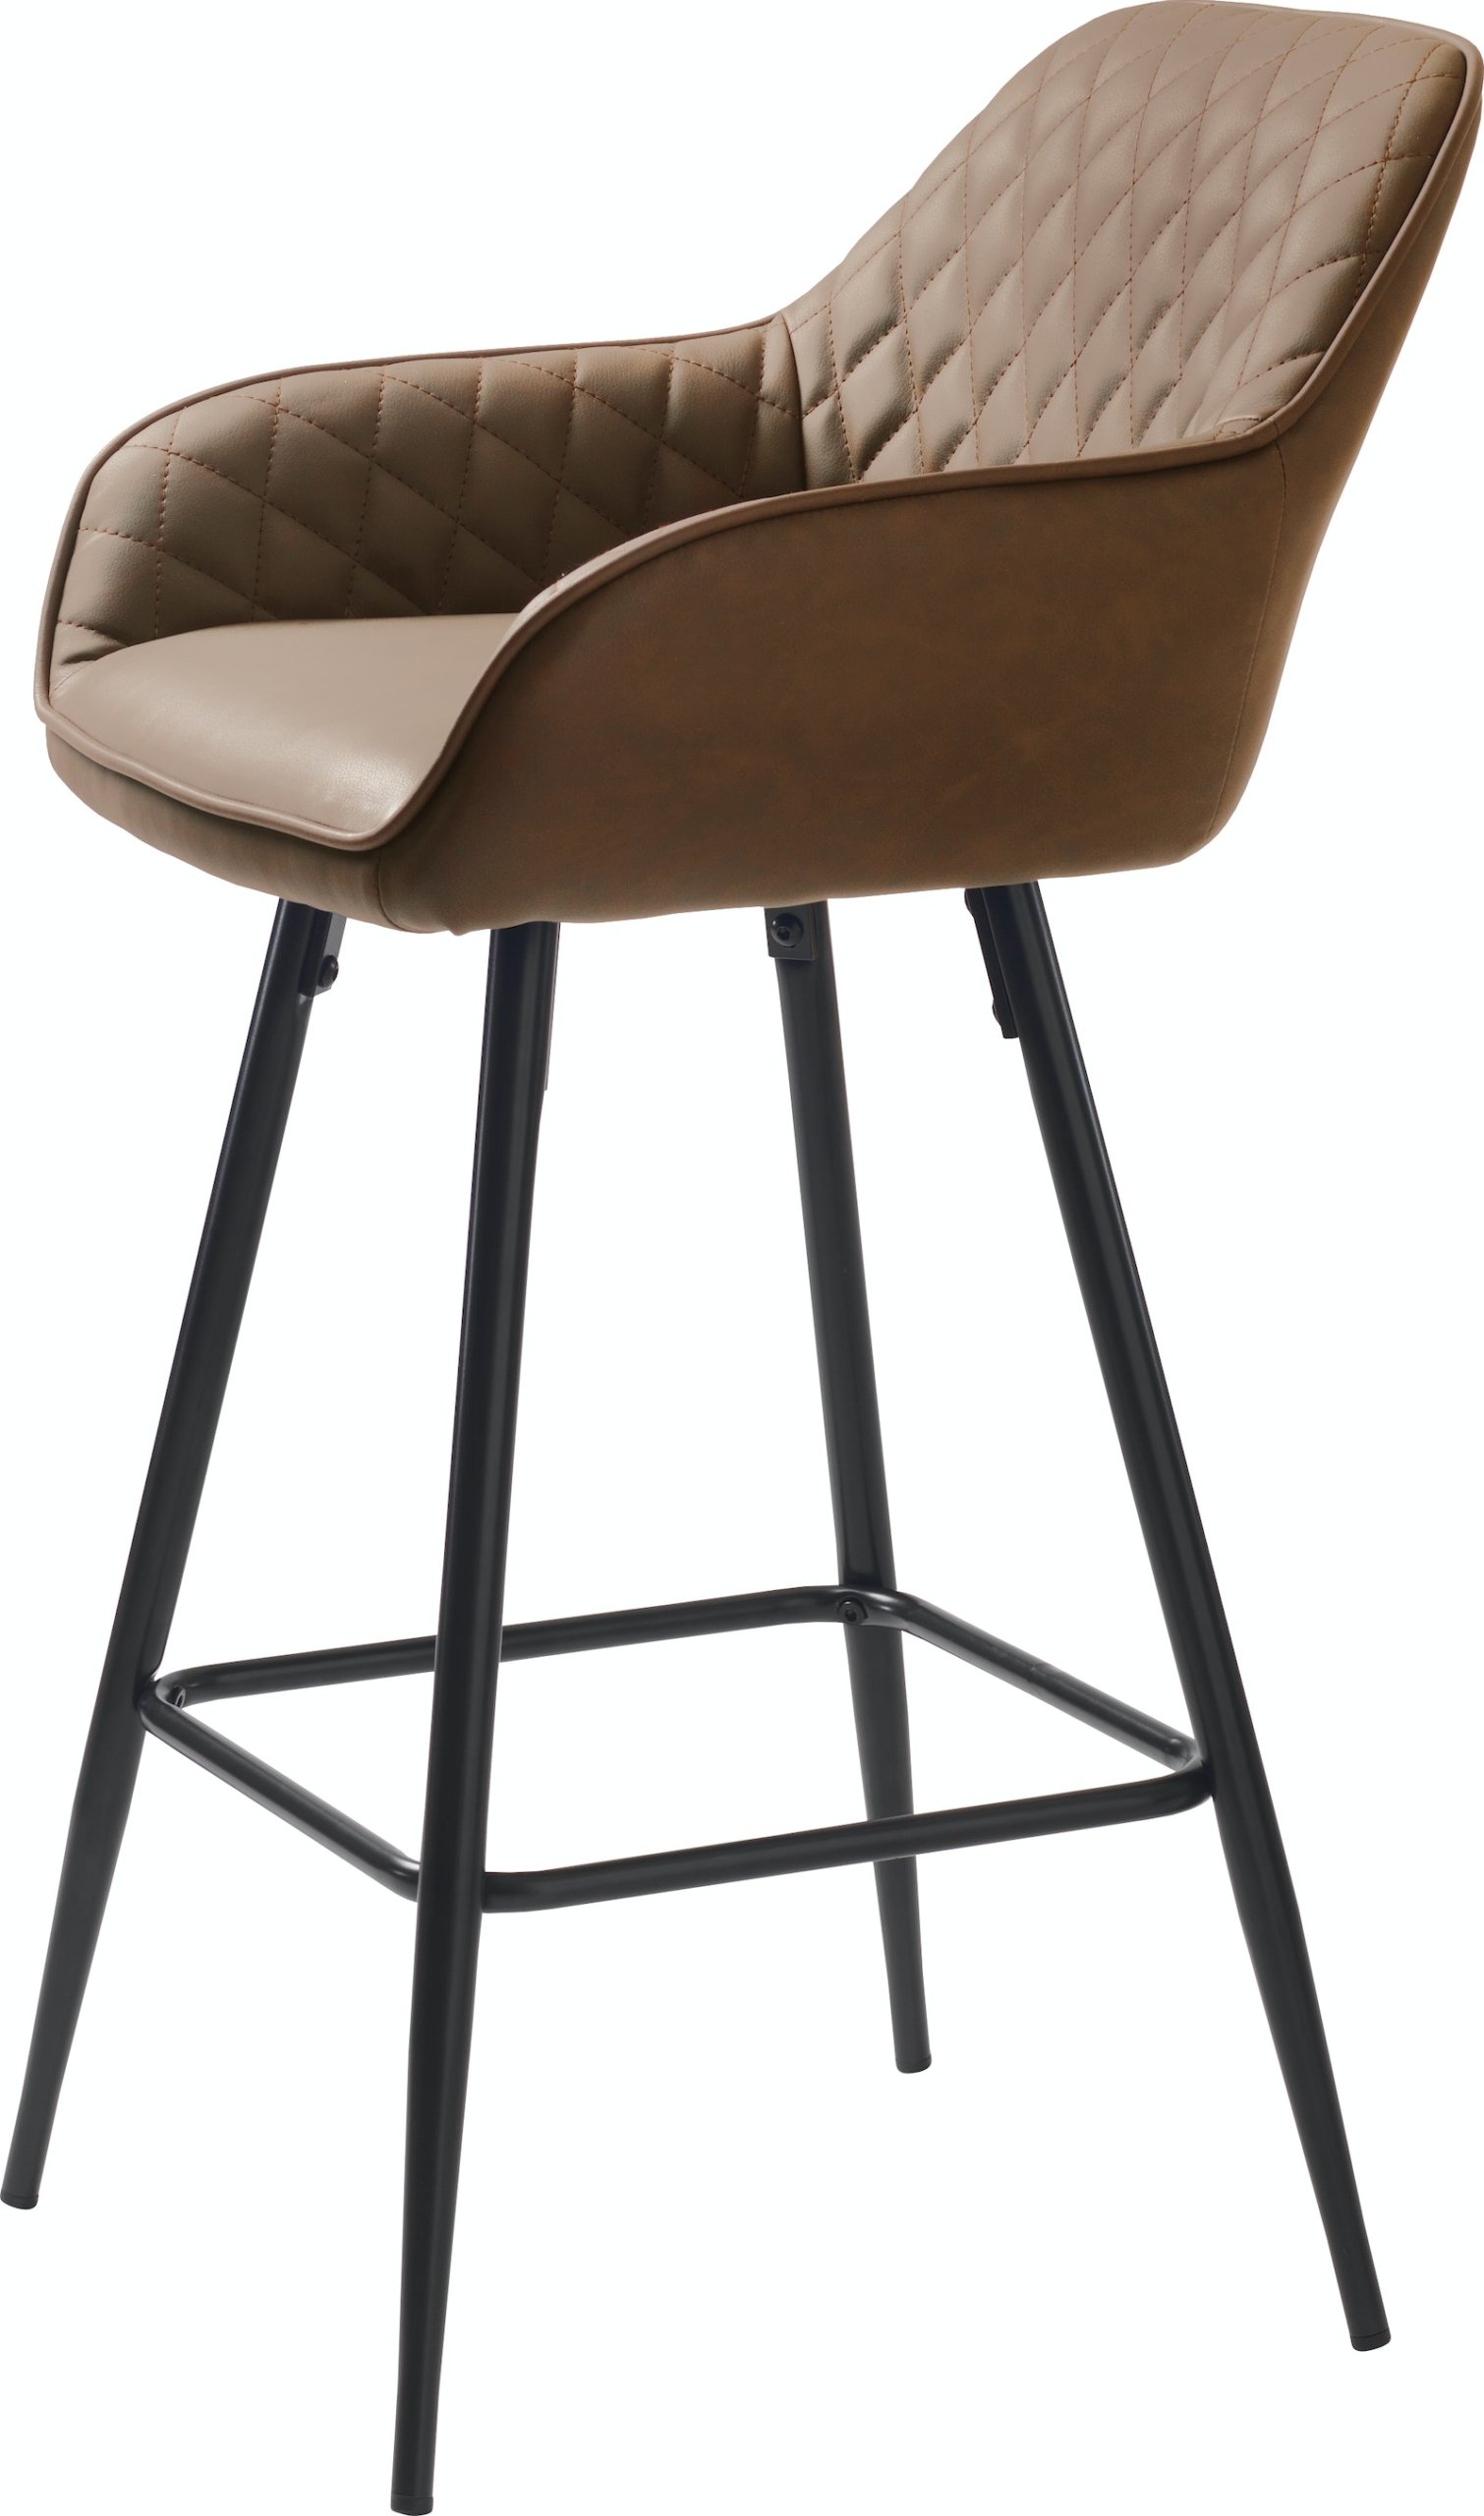 På billedet ser du variationen Milton, Barstol, Brun, PU læder fra brandet Unique furniture i en størrelse H: 92 cm. x B: 51 cm. x D: 52 cm. i farven Lys brun